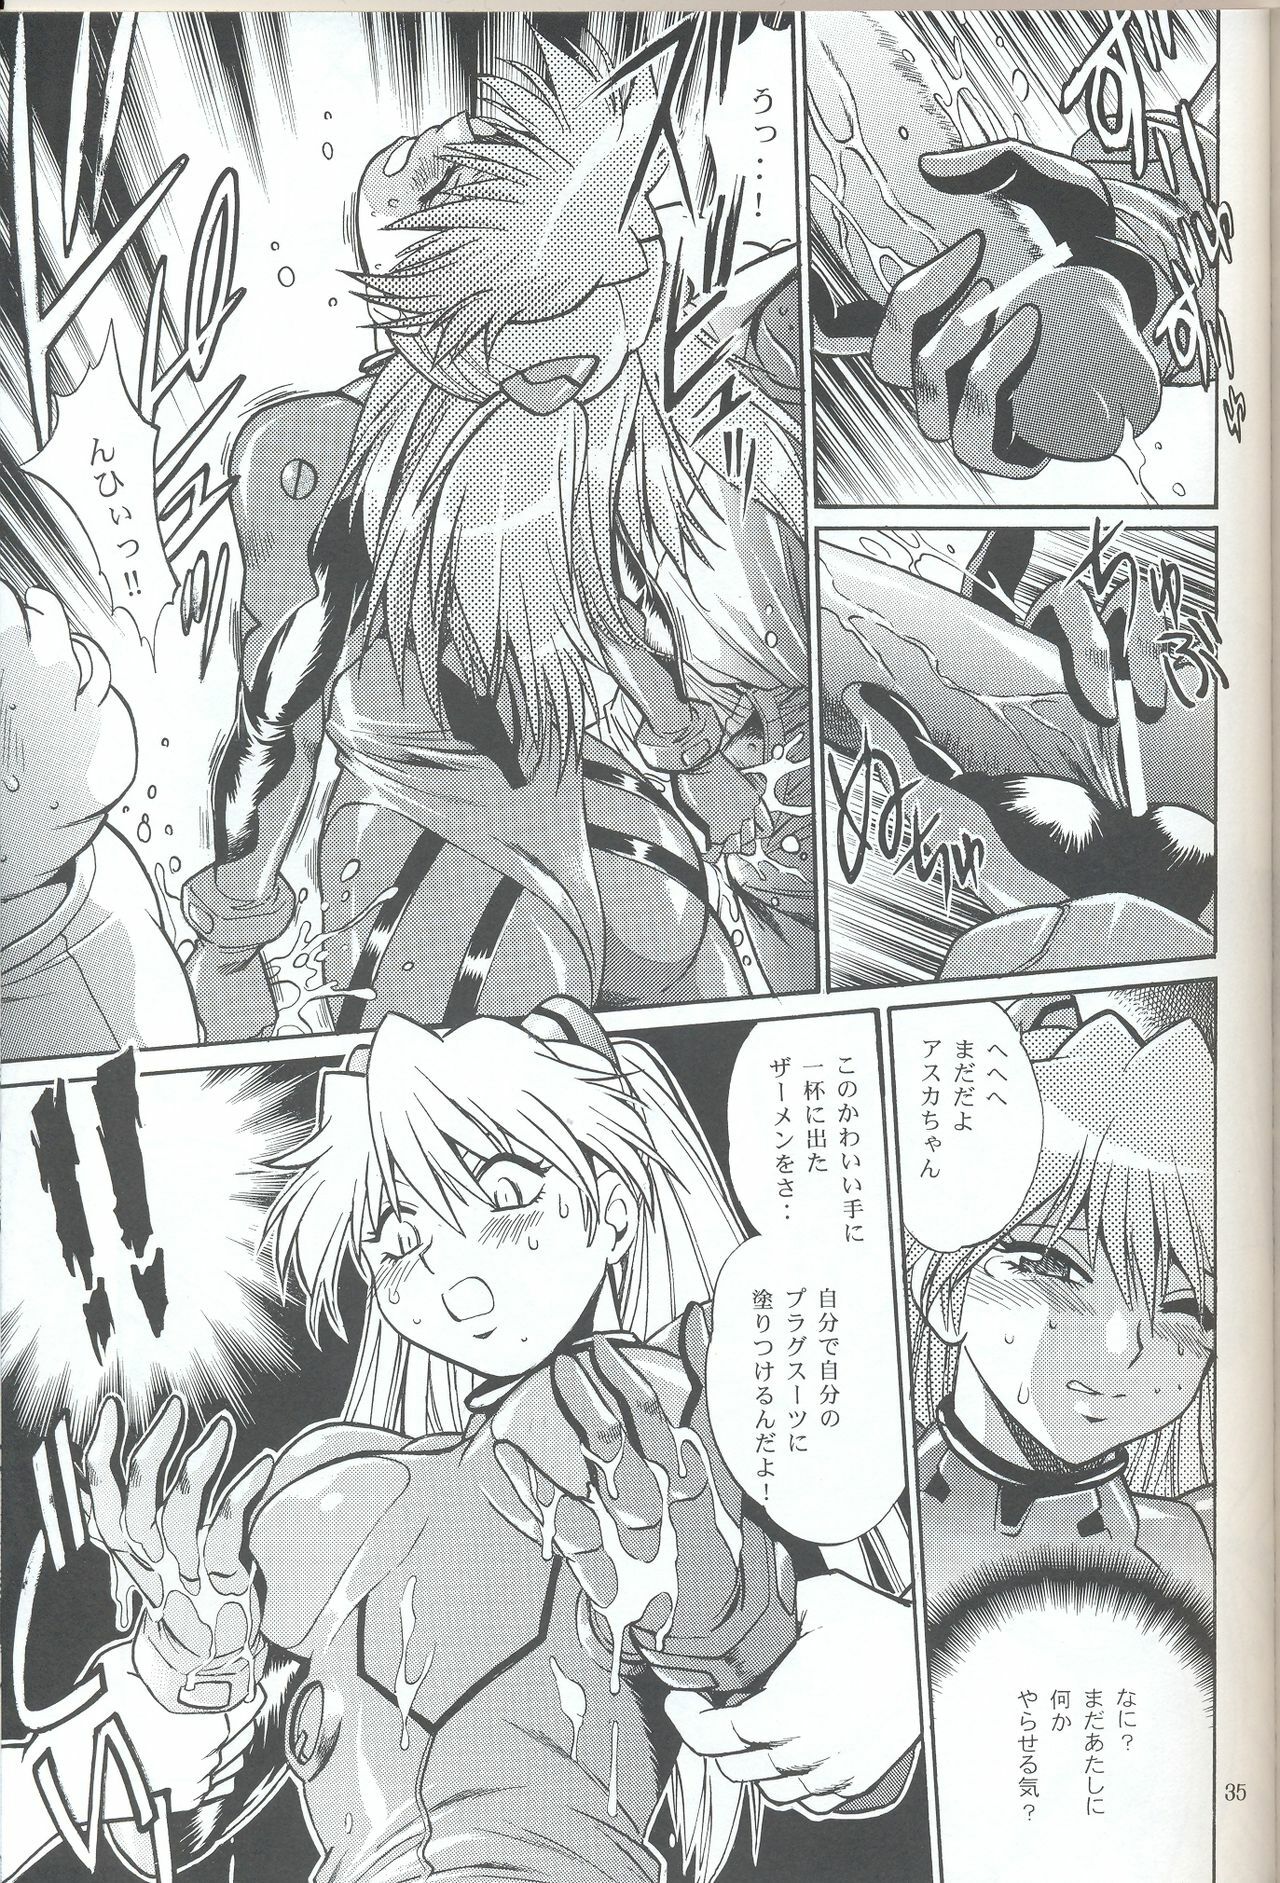 (SC32) [Studio Katsudon (Manabe Jouji)] Plug Suit Fetish In Chikan Densha (Neon Genesis Evangelion) page 33 full